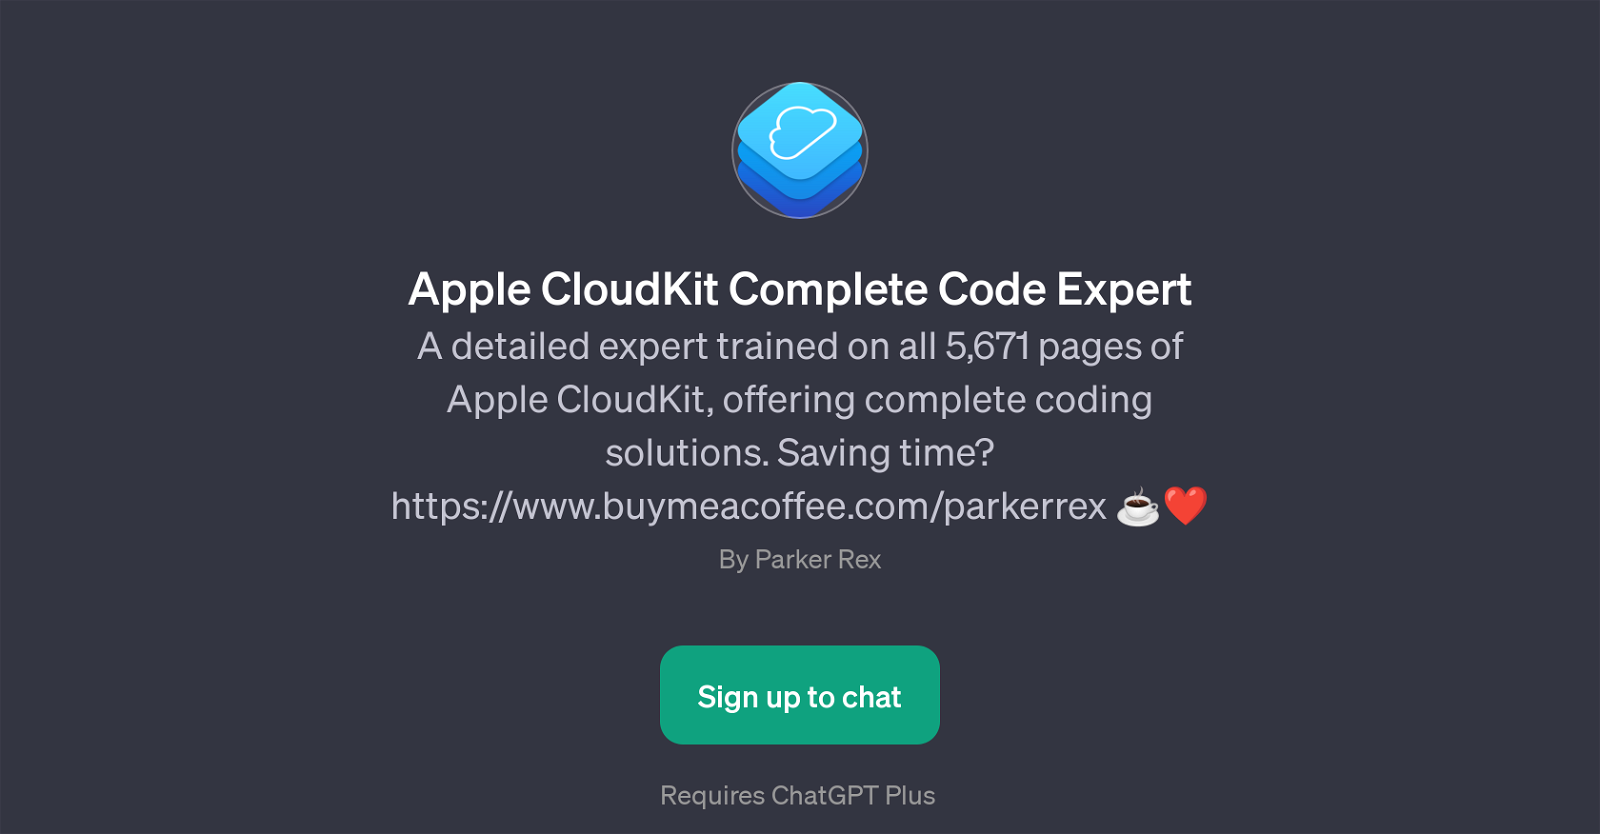 Apple CloudKit Complete Code Expert website